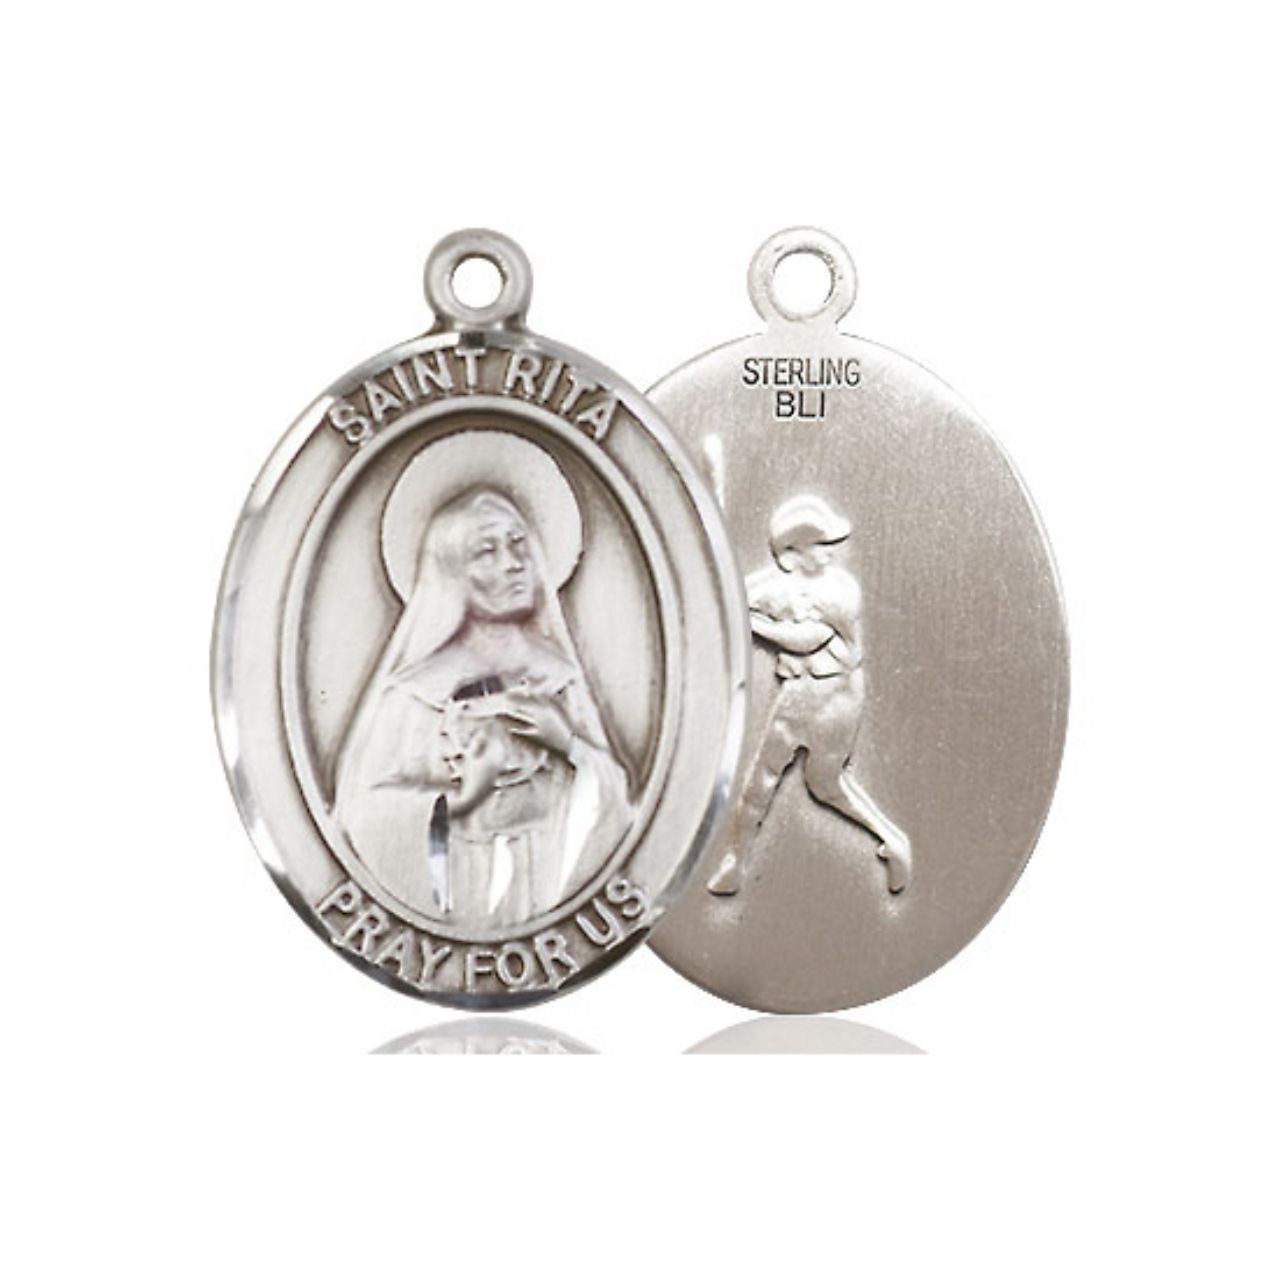 St. Rita Baseball Medal - Sterling Silver Oval Pendant (3 Sizes)